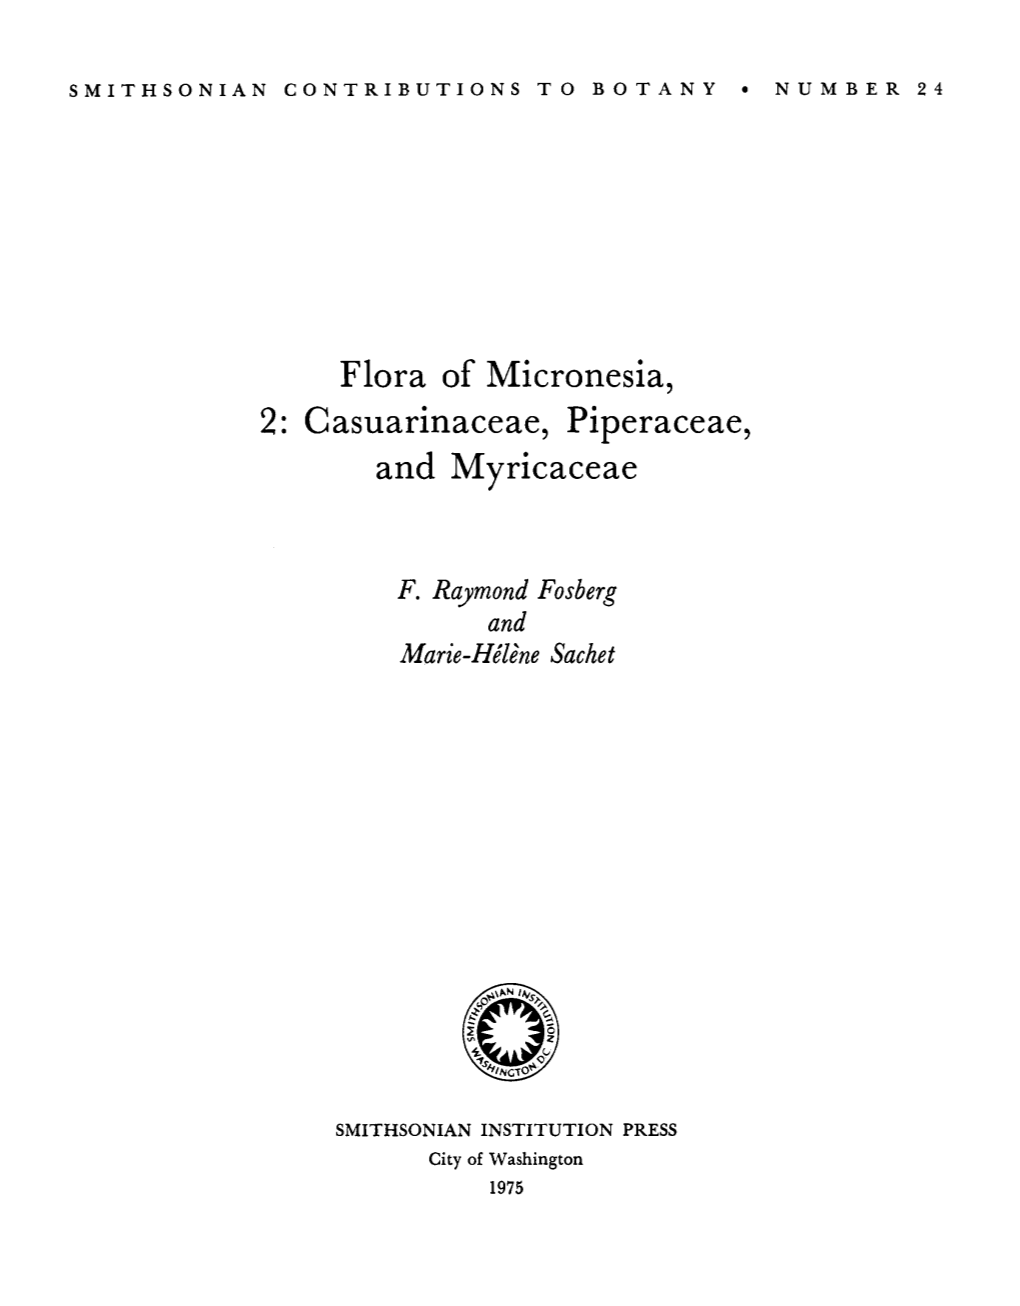 Flora of Micronesia, 2: Casuarinaceae, Piperaceae, and Myricaceae